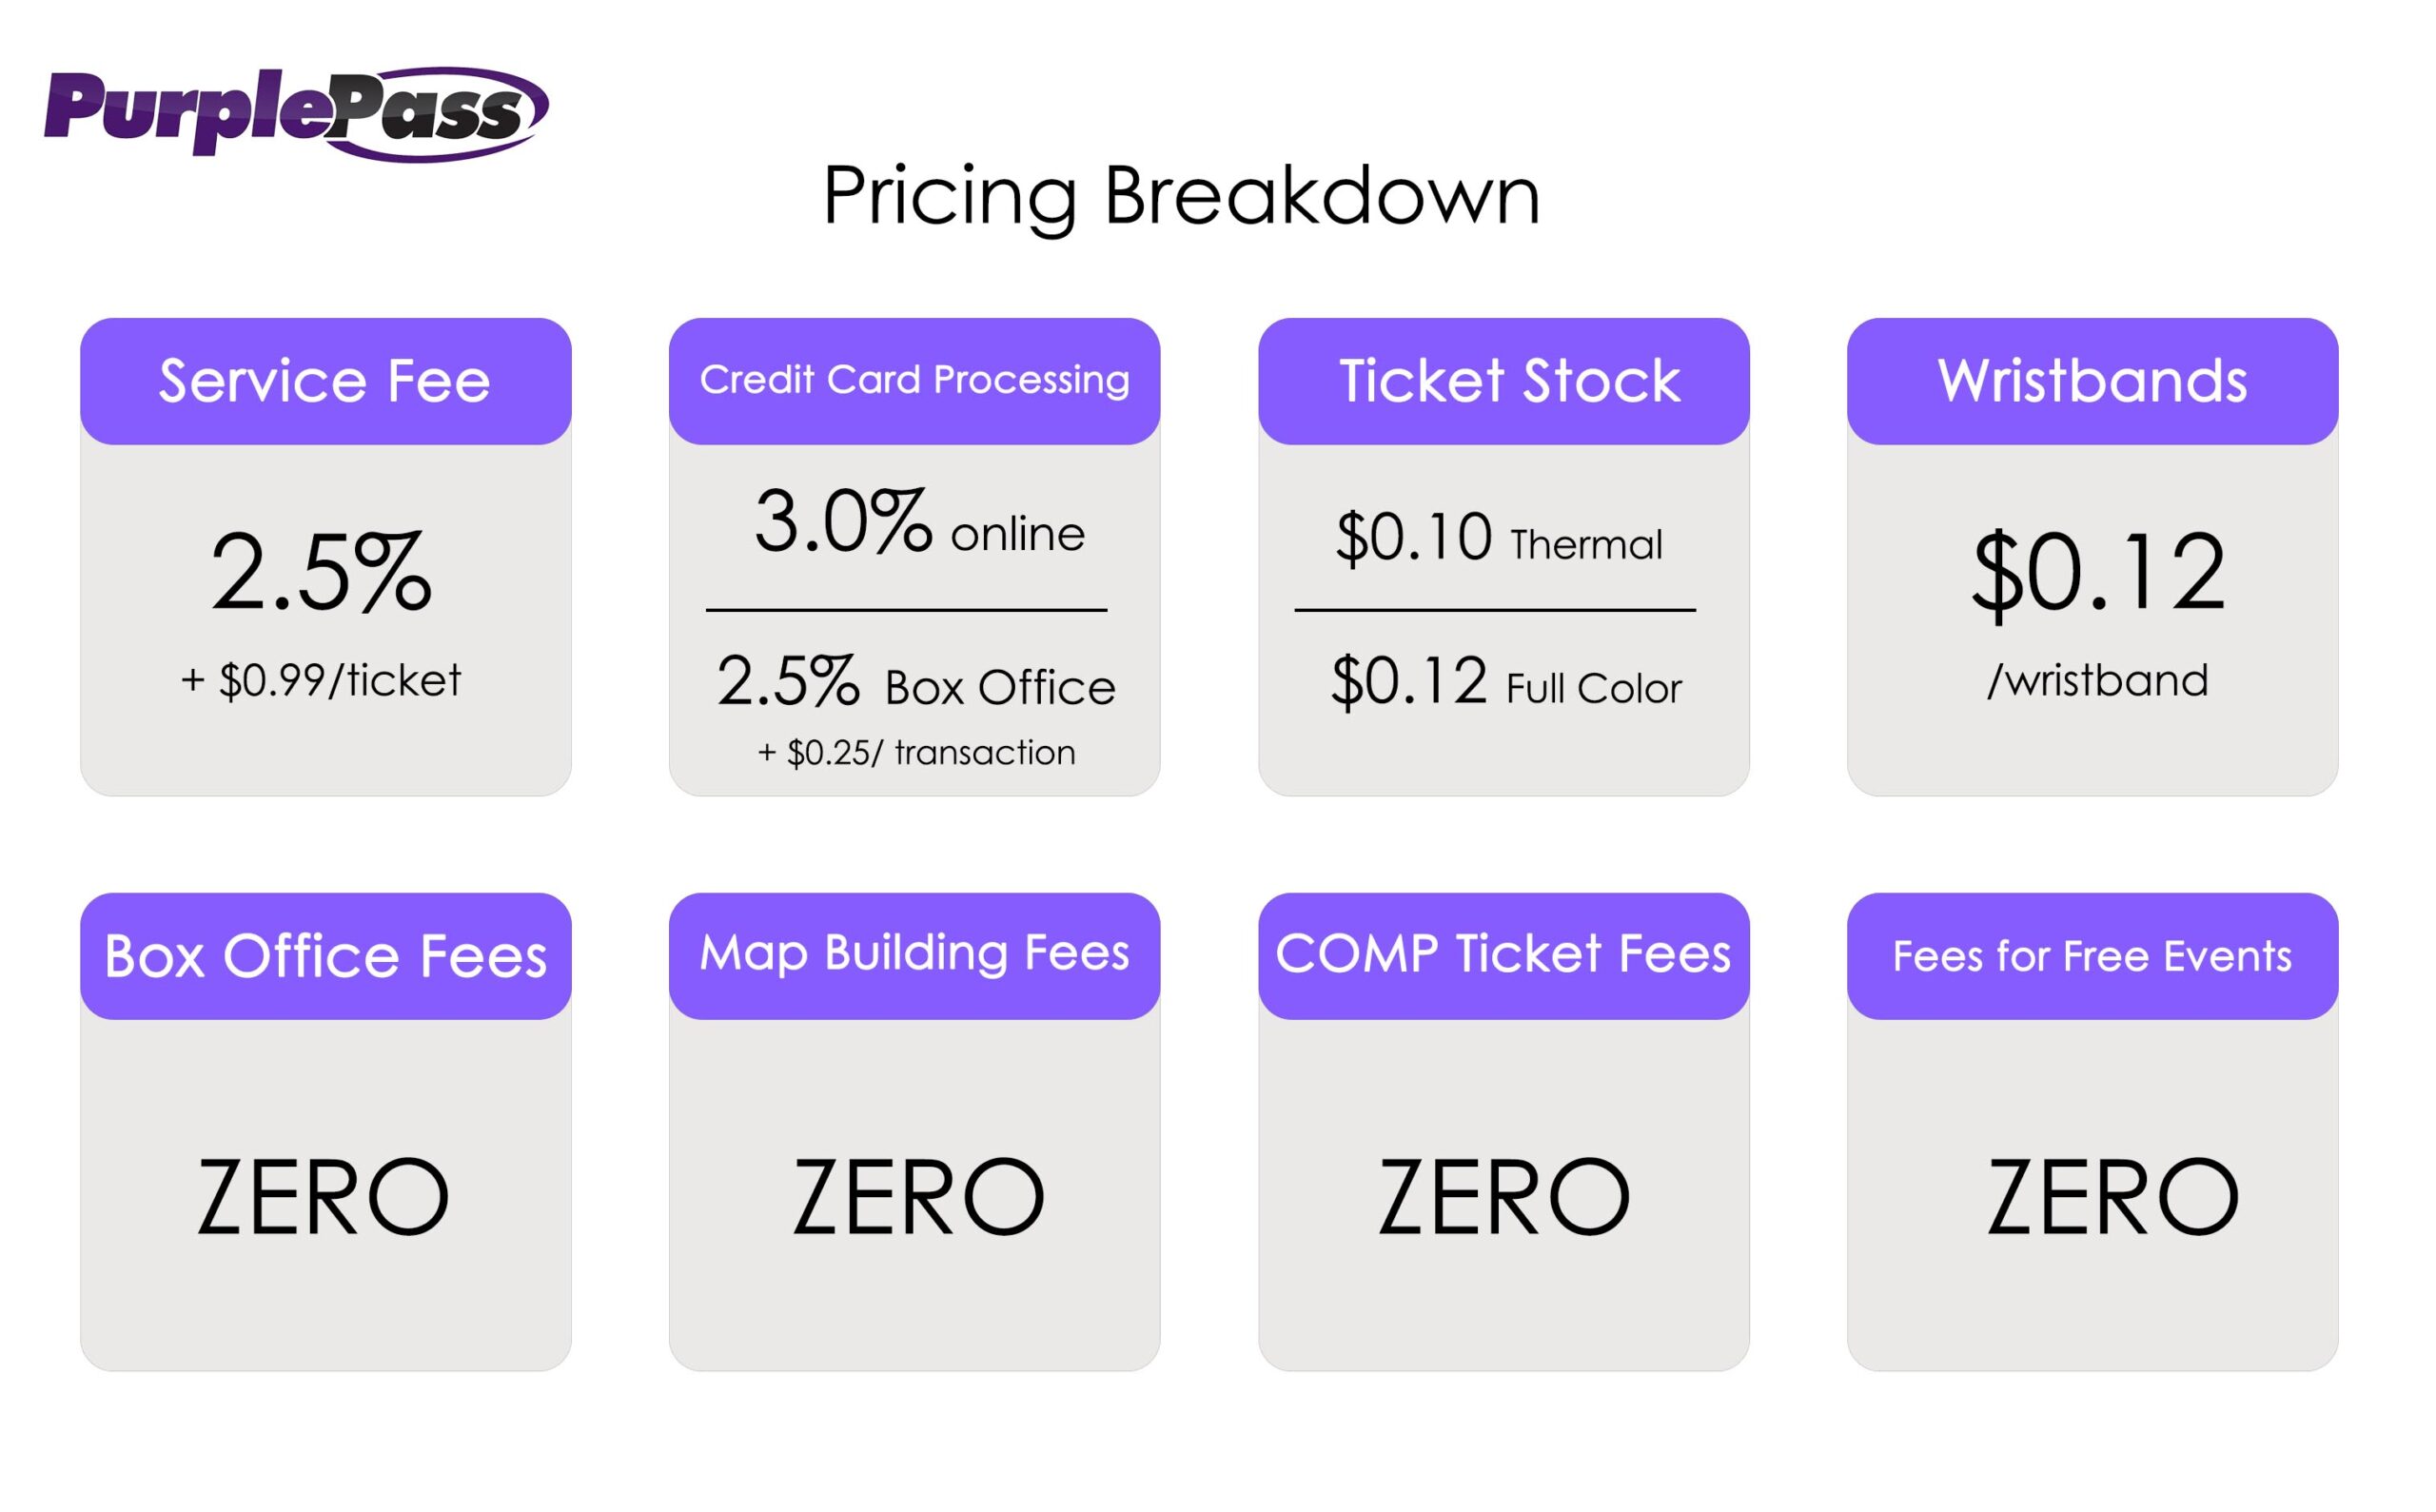 Purplepass pricing breakdown 